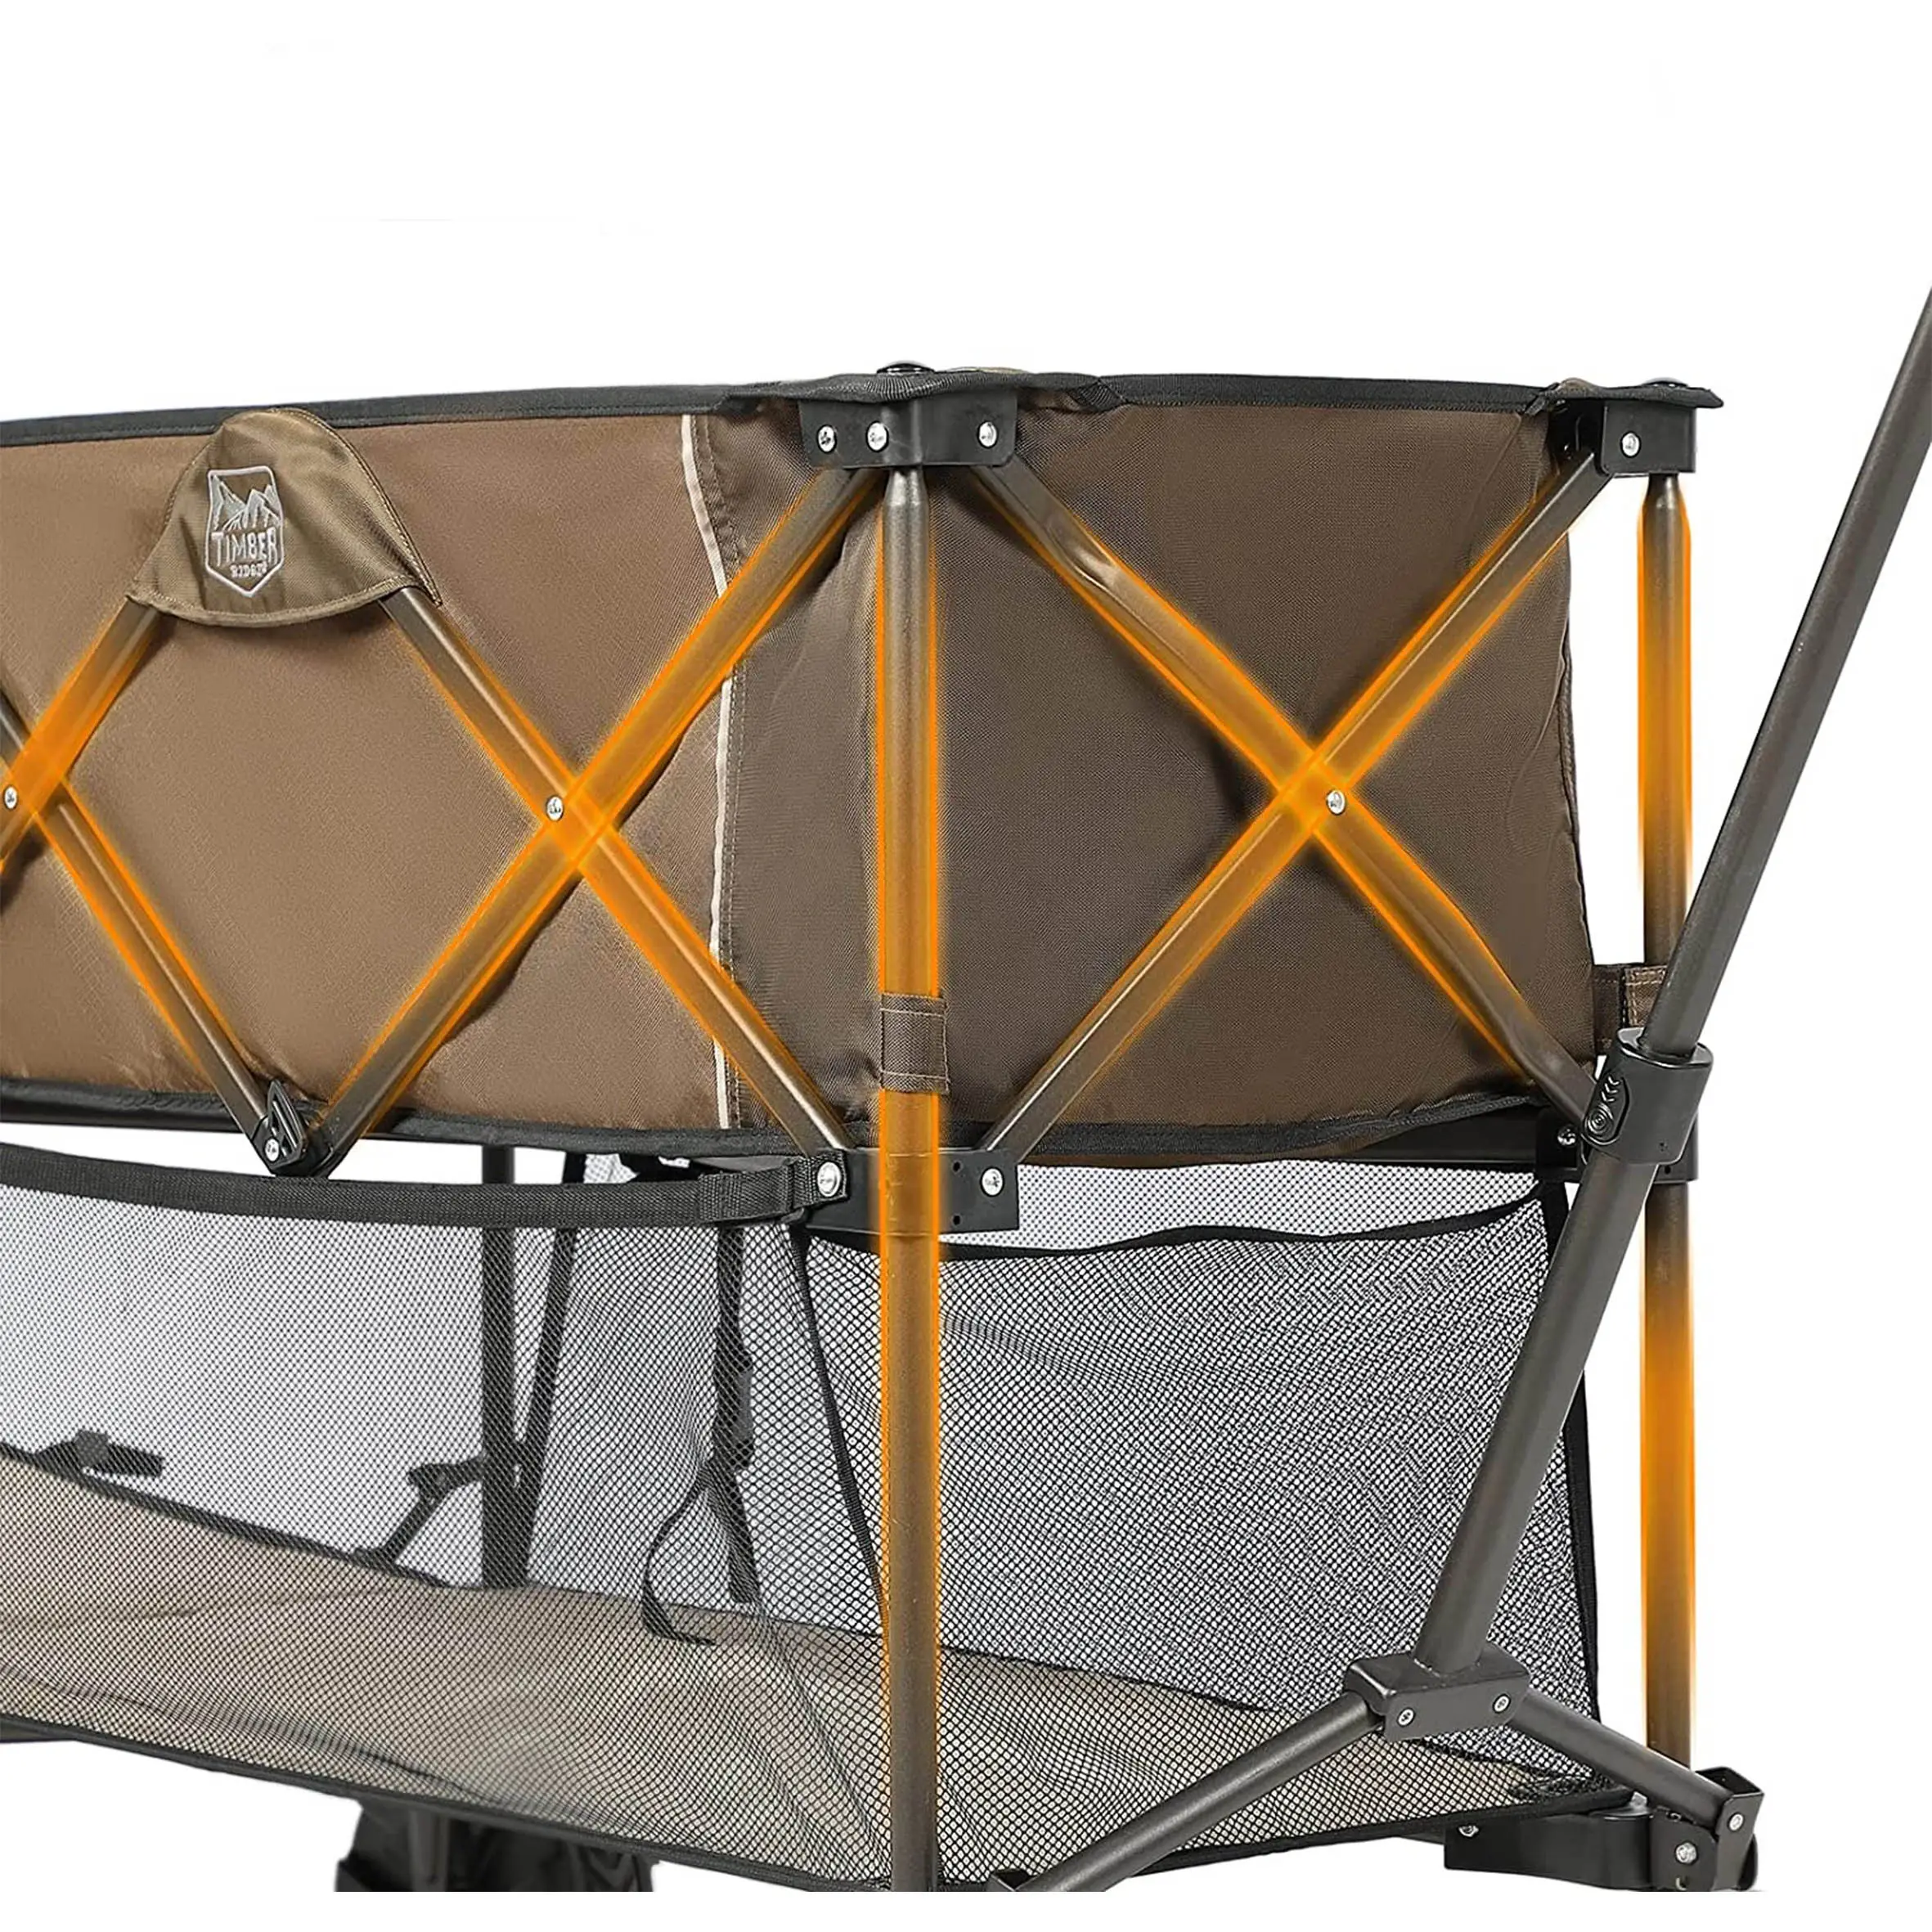 Nova Fábrica Direta Suporte Material Vendas Steel Pipe Camping Folding Cart Dobrável Camping Cart